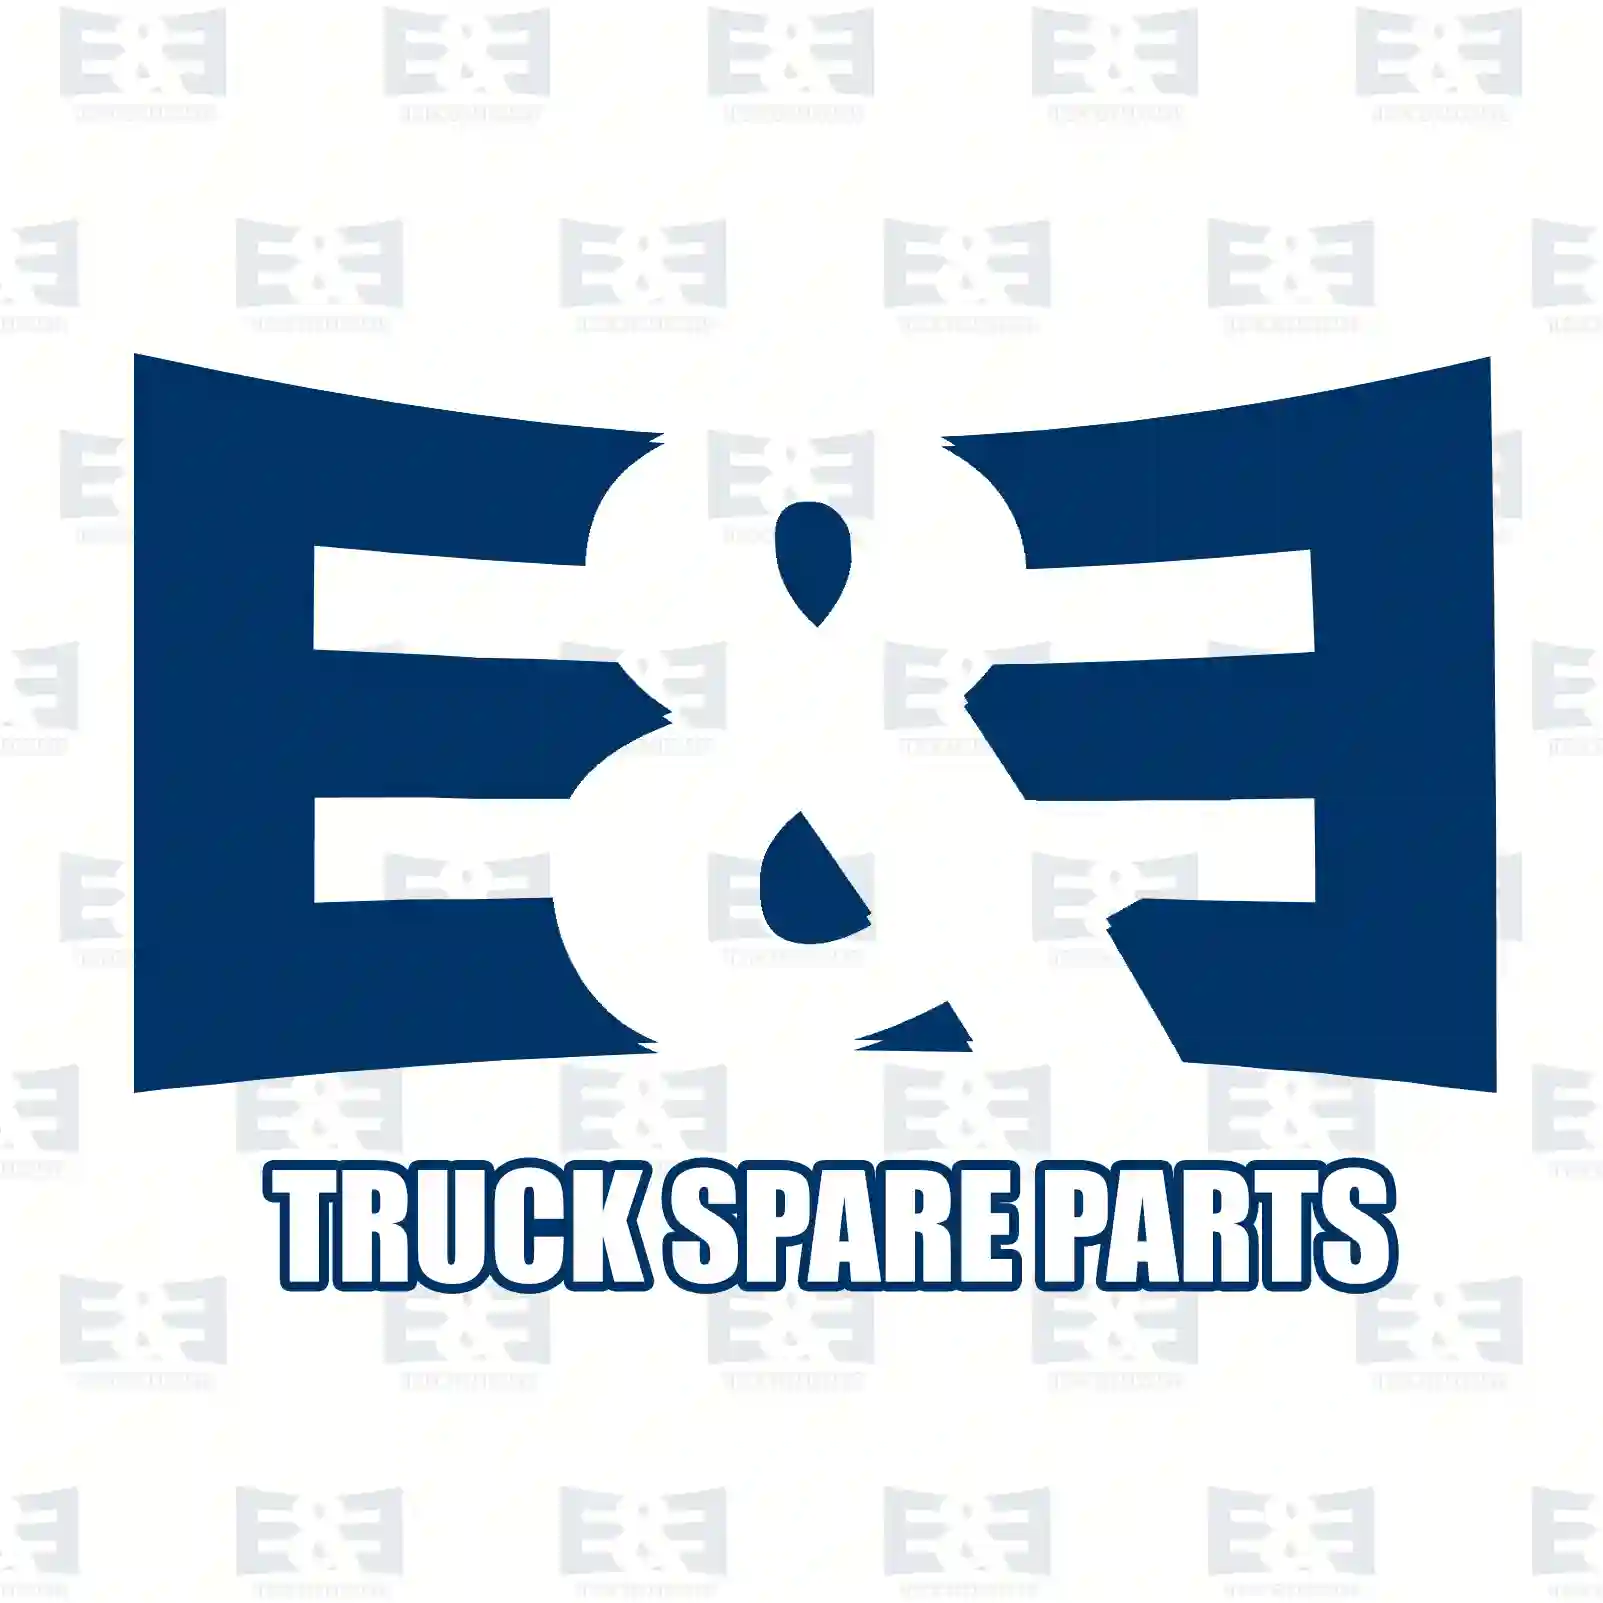 Level valve, 2E2283739, 1194465, 99444041, 81436306035, 0003277625 ||  2E2283739 E&E Truck Spare Parts | Truck Spare Parts, Auotomotive Spare Parts Level valve, 2E2283739, 1194465, 99444041, 81436306035, 0003277625 ||  2E2283739 E&E Truck Spare Parts | Truck Spare Parts, Auotomotive Spare Parts